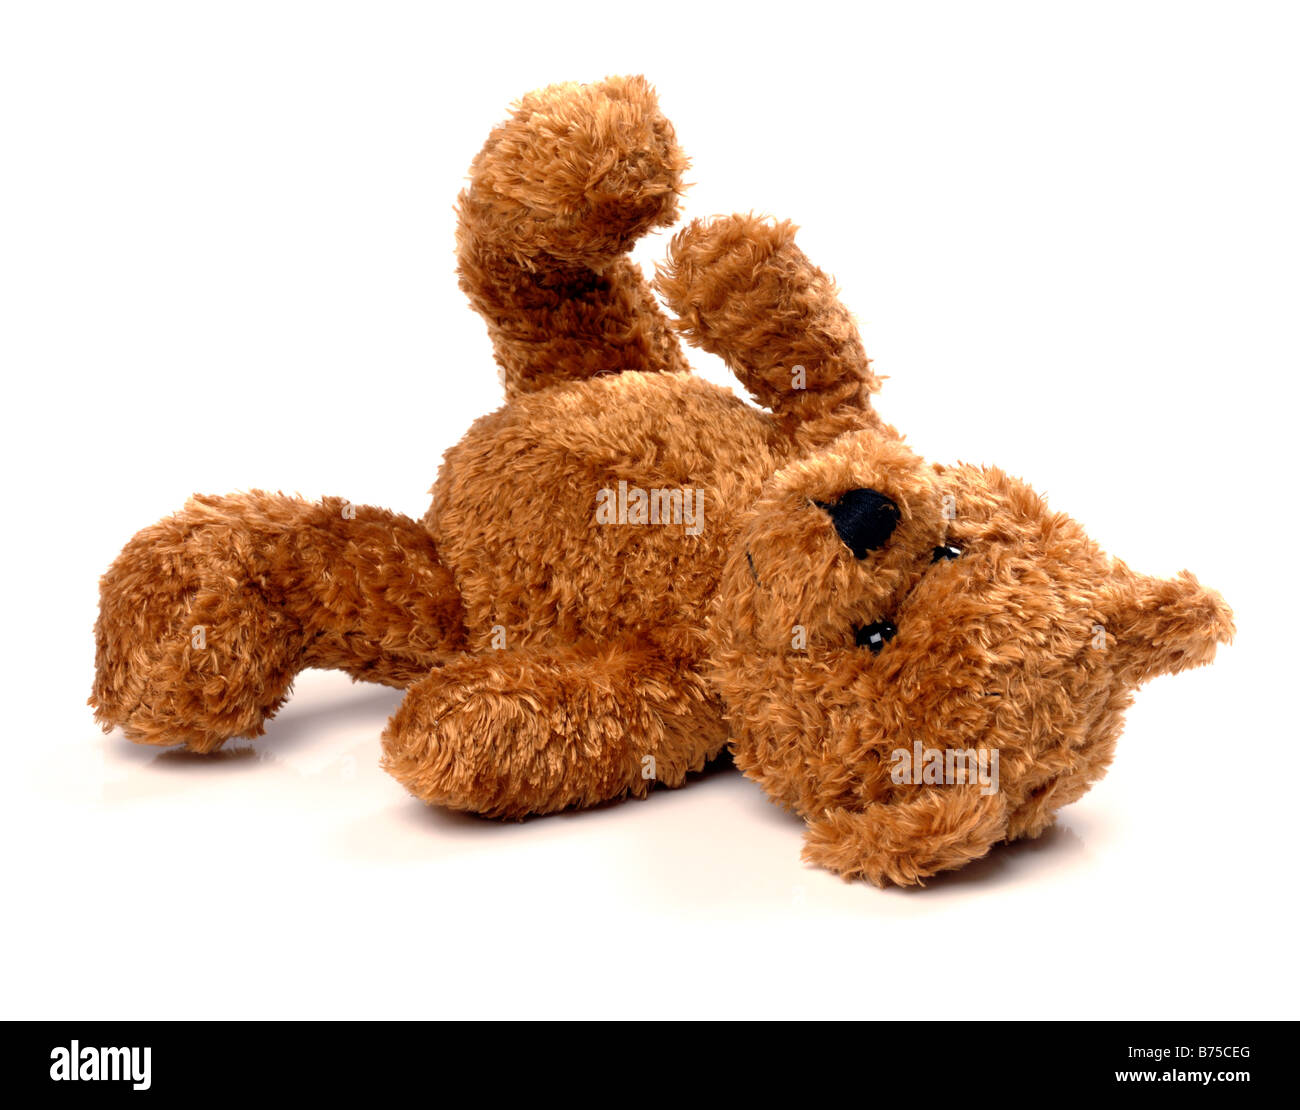 Discarded teddy bear Stock Photo